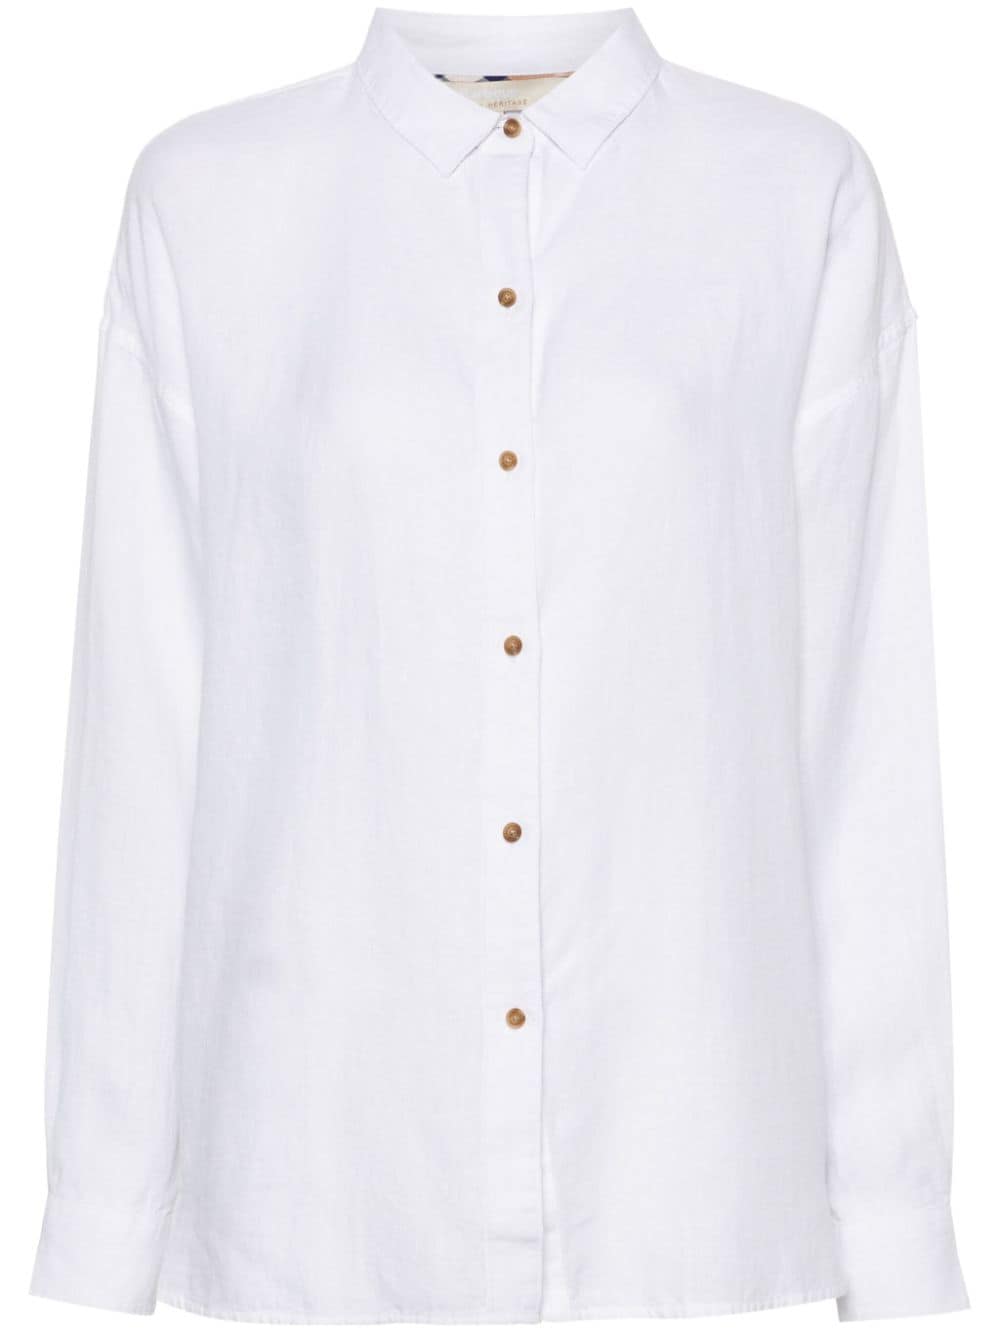 Hampton button-up linen shirt